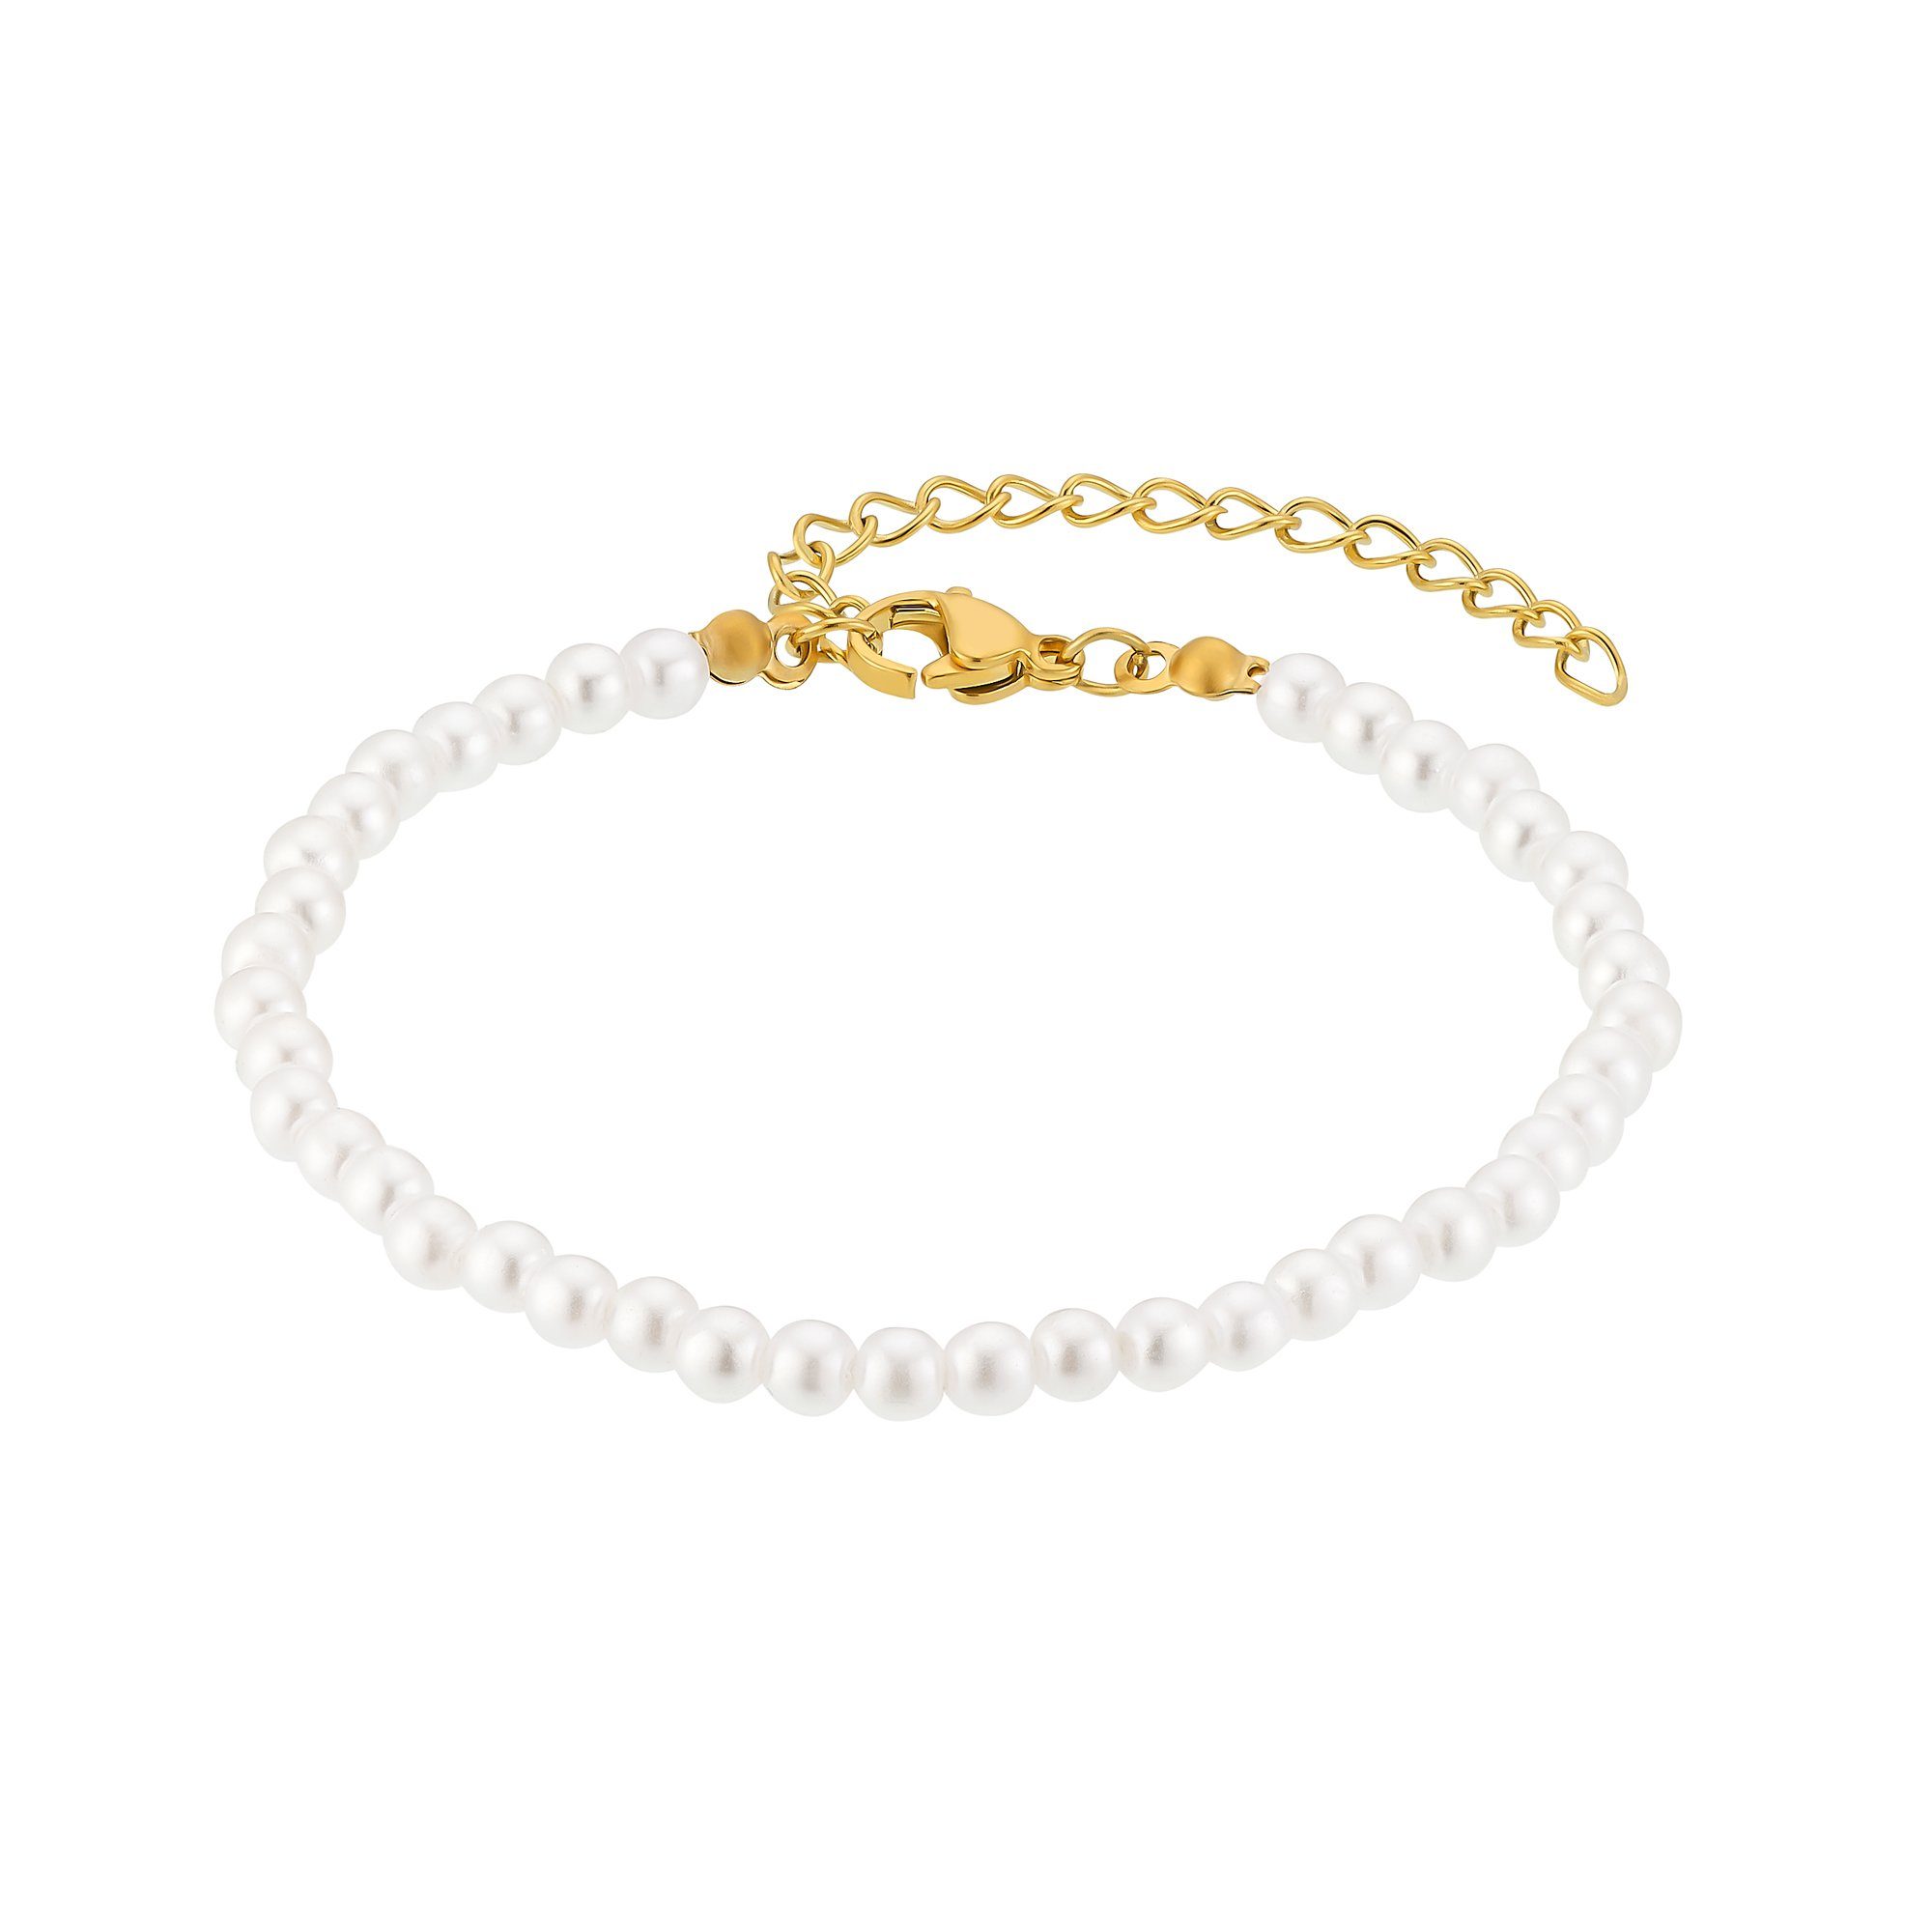 Heideman Armband Juliane silberfarben poliert (Armband, inkl. Geschenkverpackung), Perlenarmband Frauen goldfarben | Edelstahlarmbänder